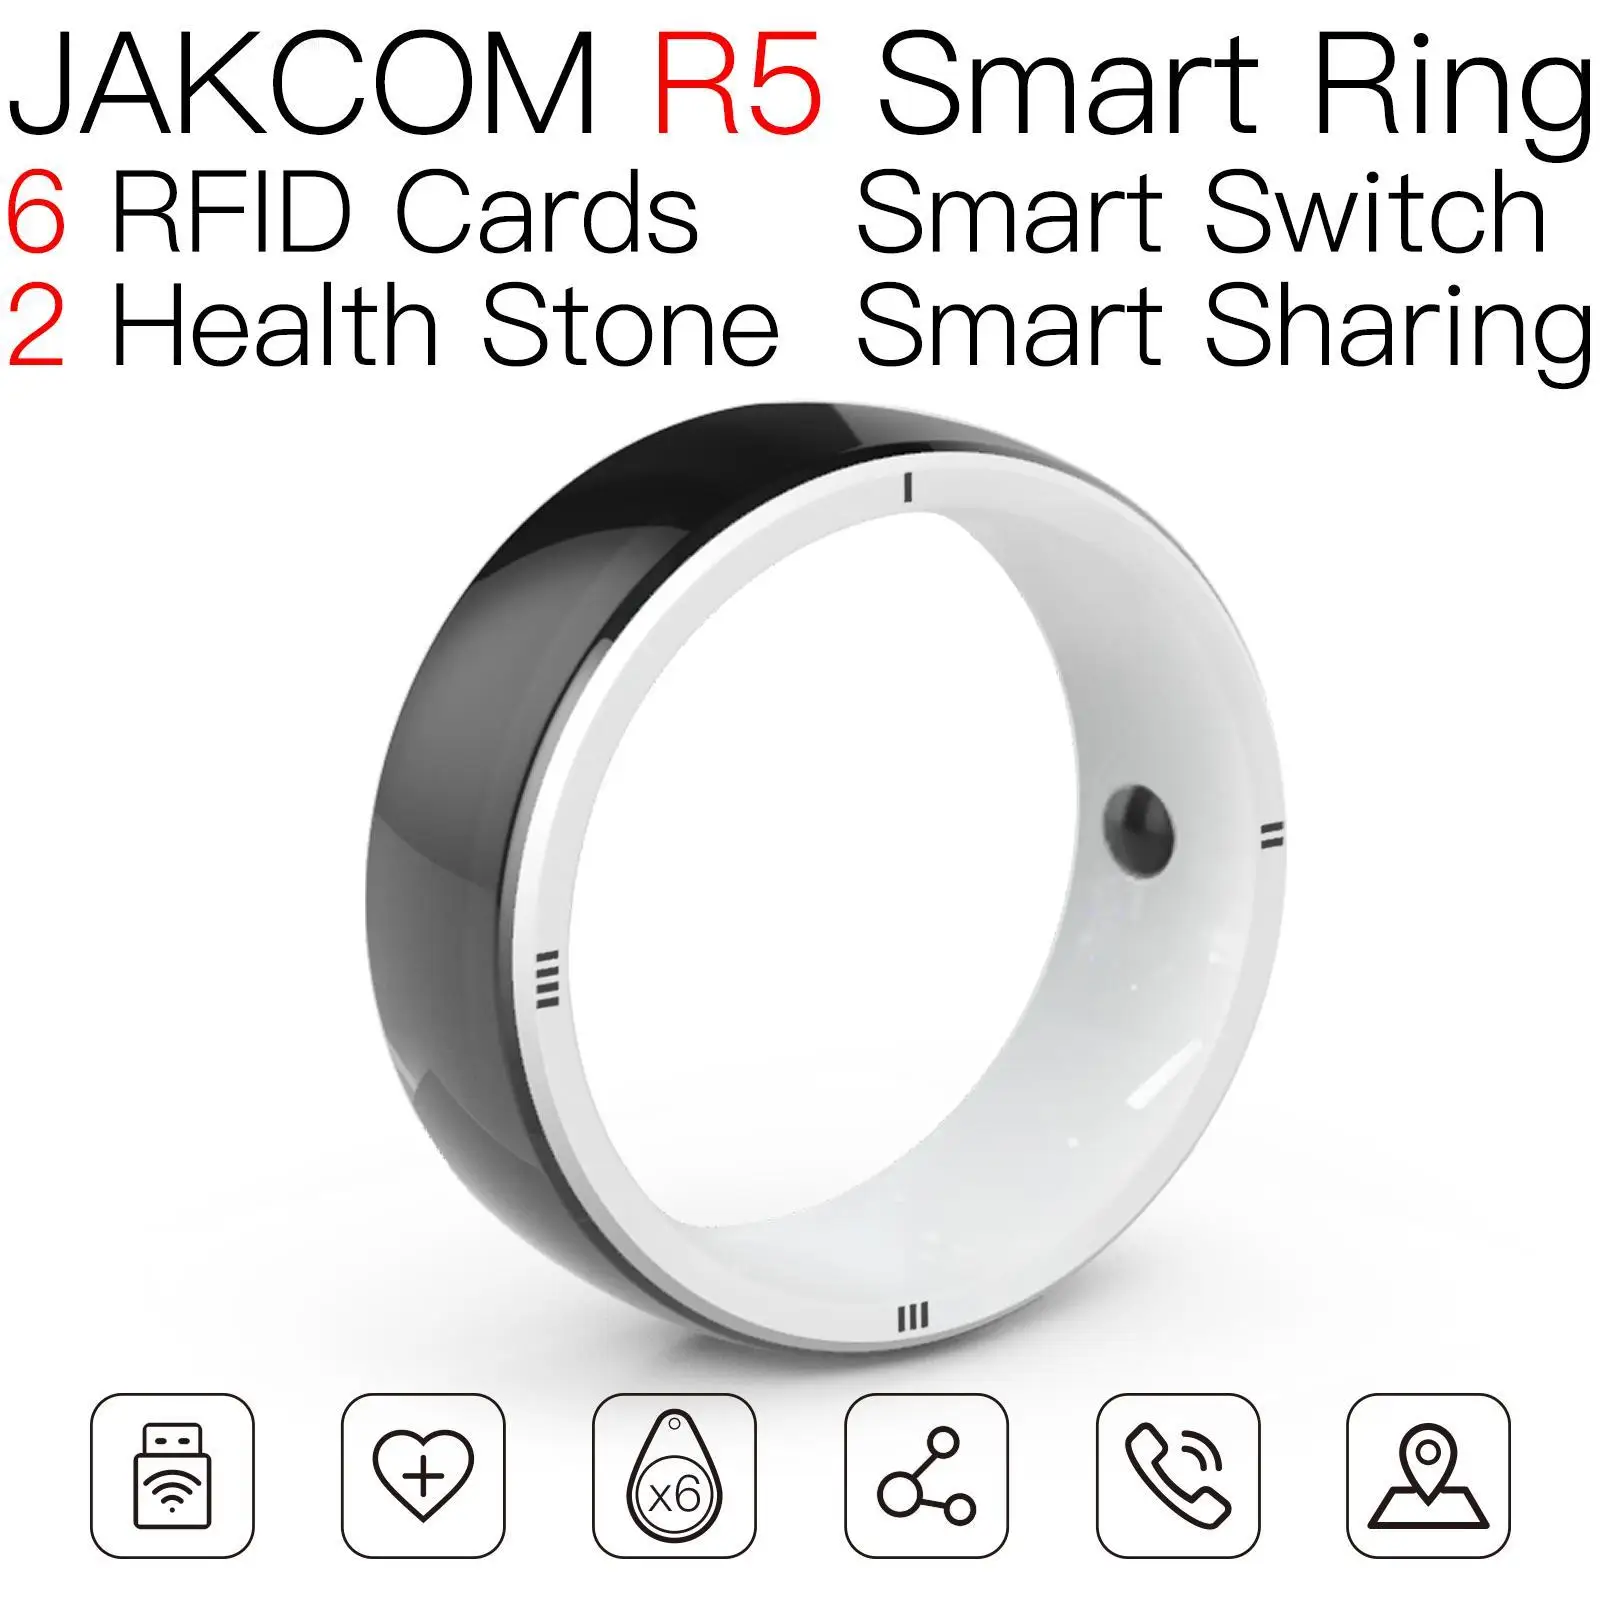 

Умное кольцо JAKCOM R5, новый продукт, как браслет 6 nfc adyce, Официальный магазин ТВ android edge s, часы, цена th16